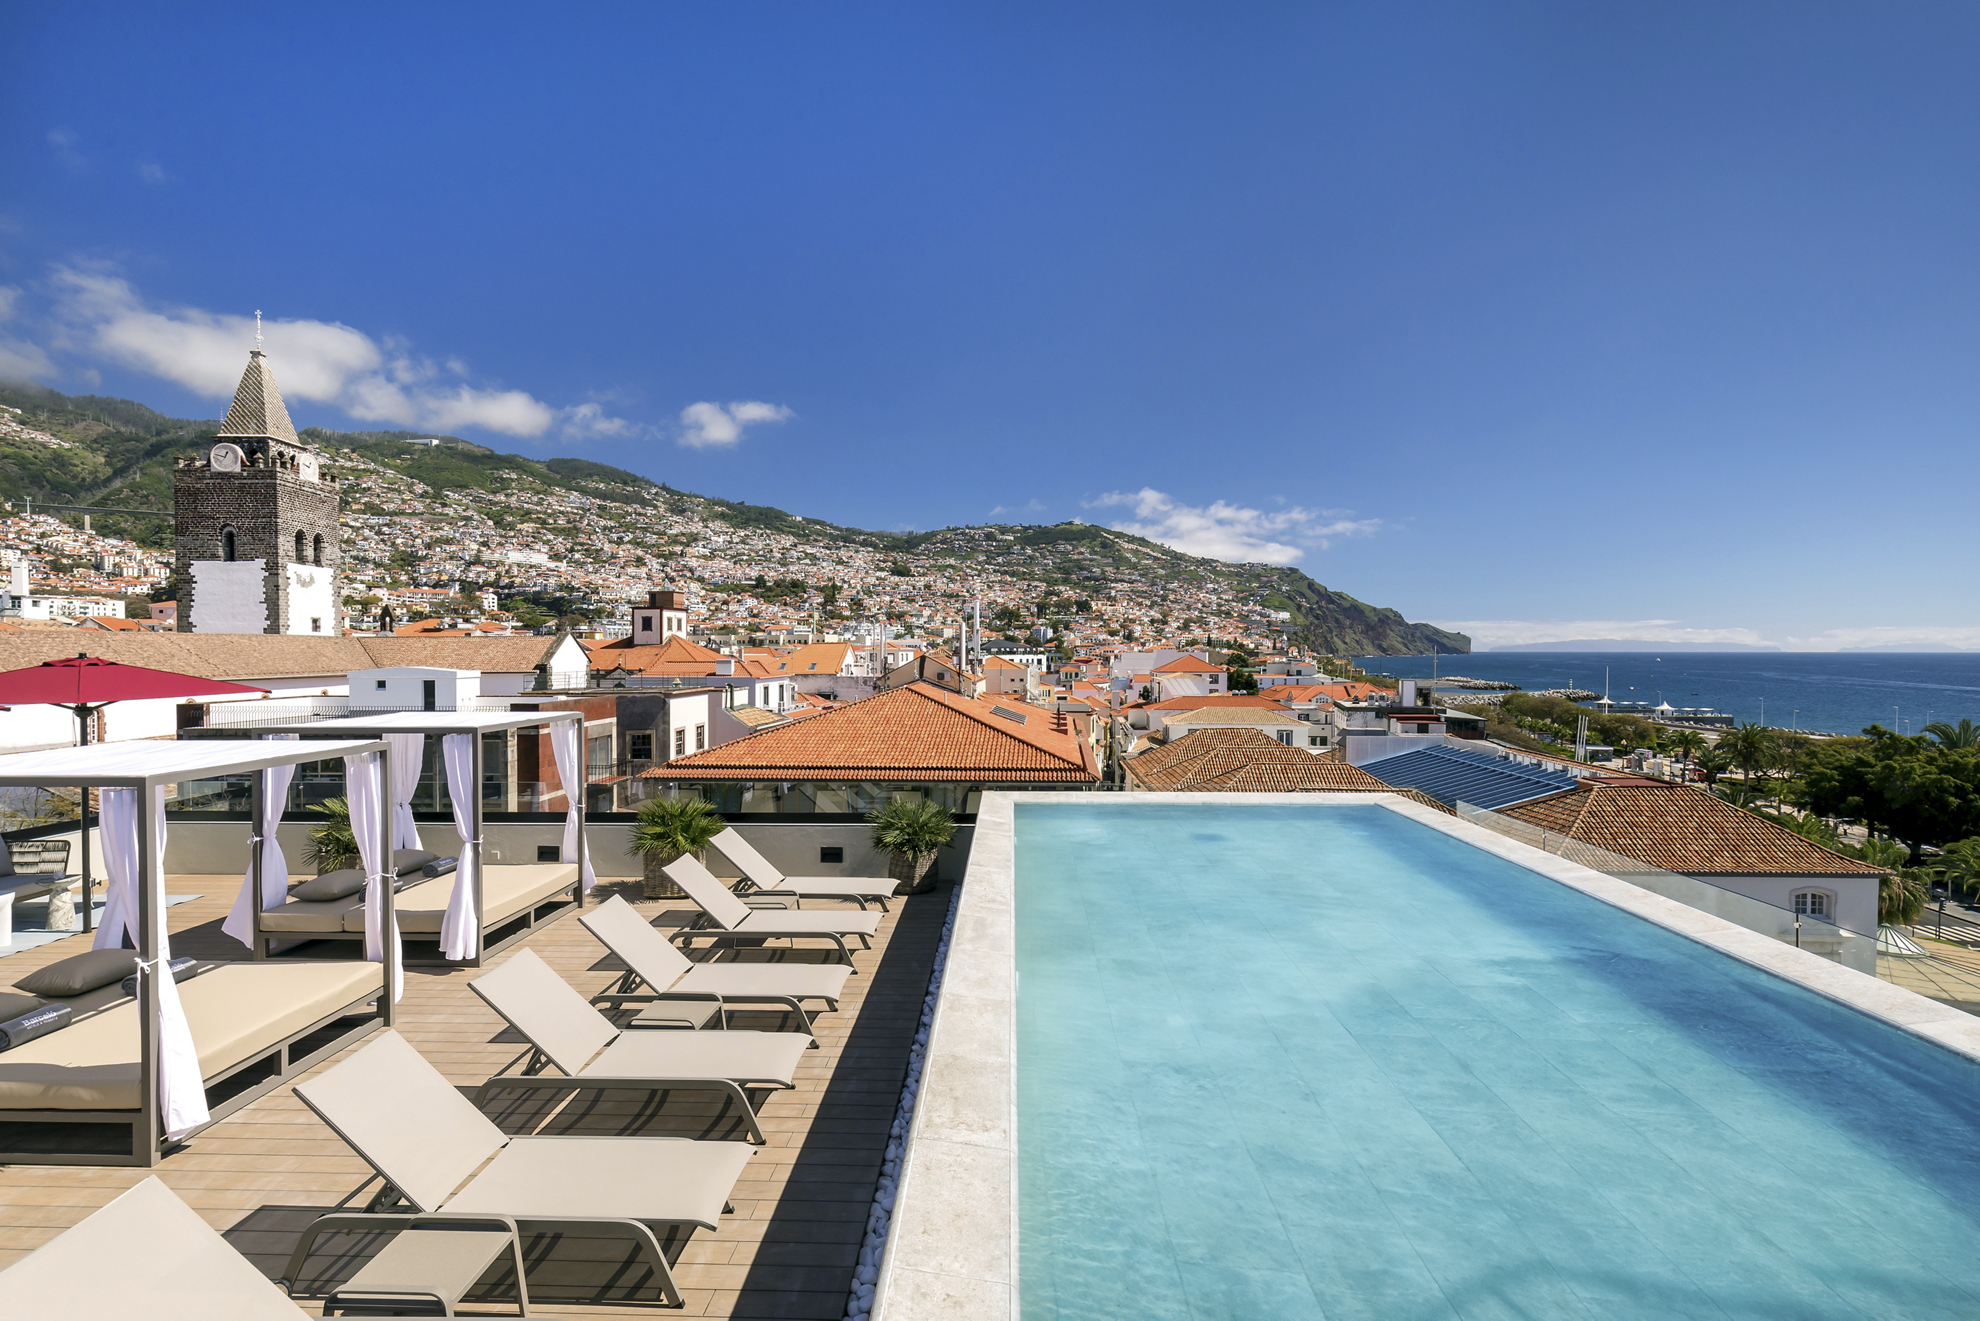 Babymoon-Urlaubsziele: Blick auf die Stadt Funchal von einer Terrasse mit balinesischen Betten.